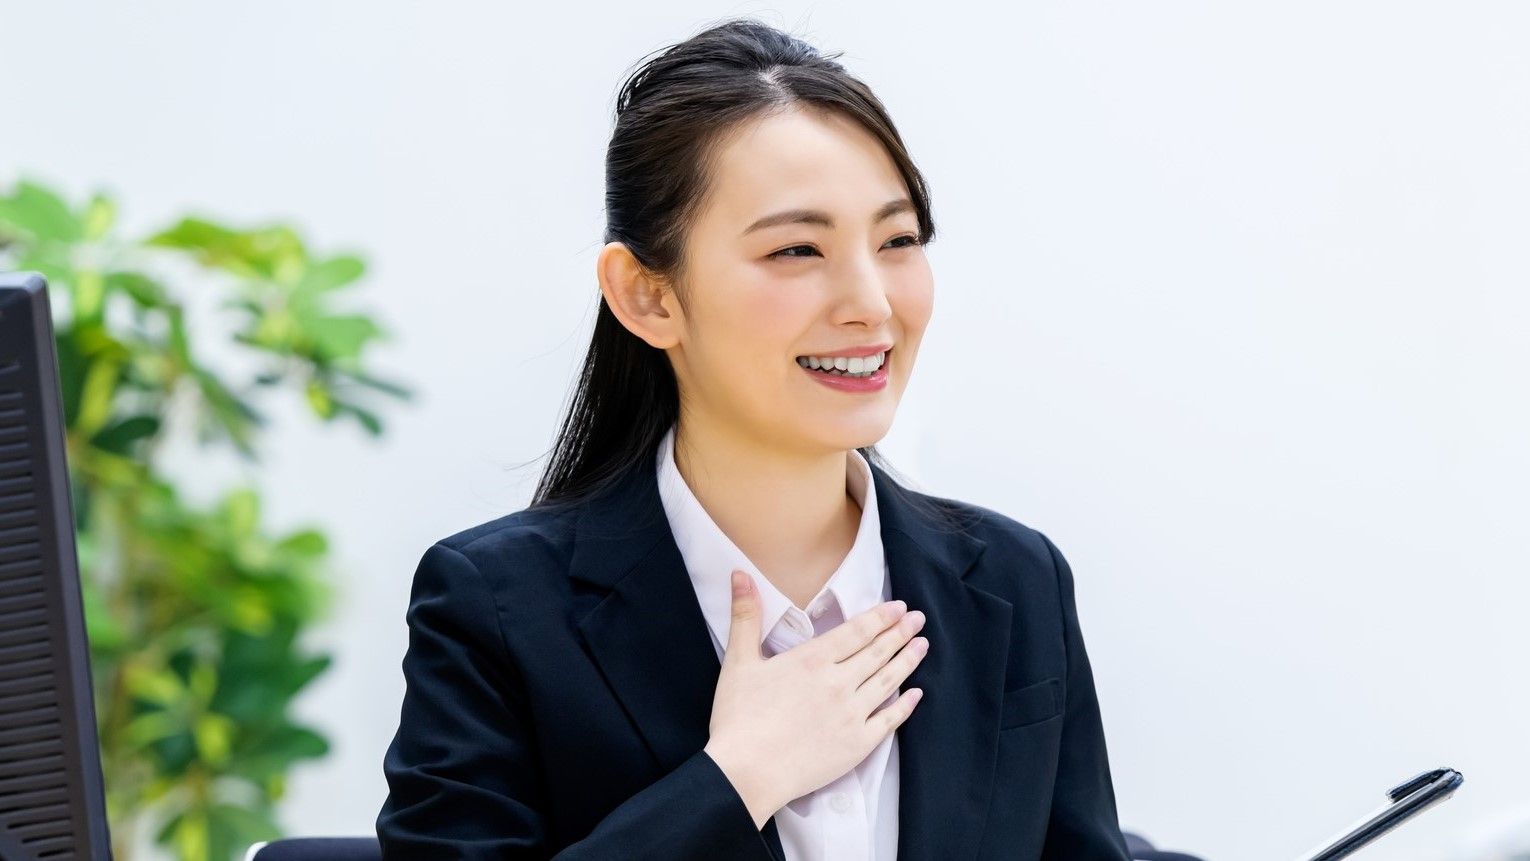 ｢話し方｣を変えると｢自信がついてくる｣納得理由 日本人の悩み｢自信がない｣解決する秘訣は？ | リーダーシップ・教養・資格・スキル | 東洋経済オンライン